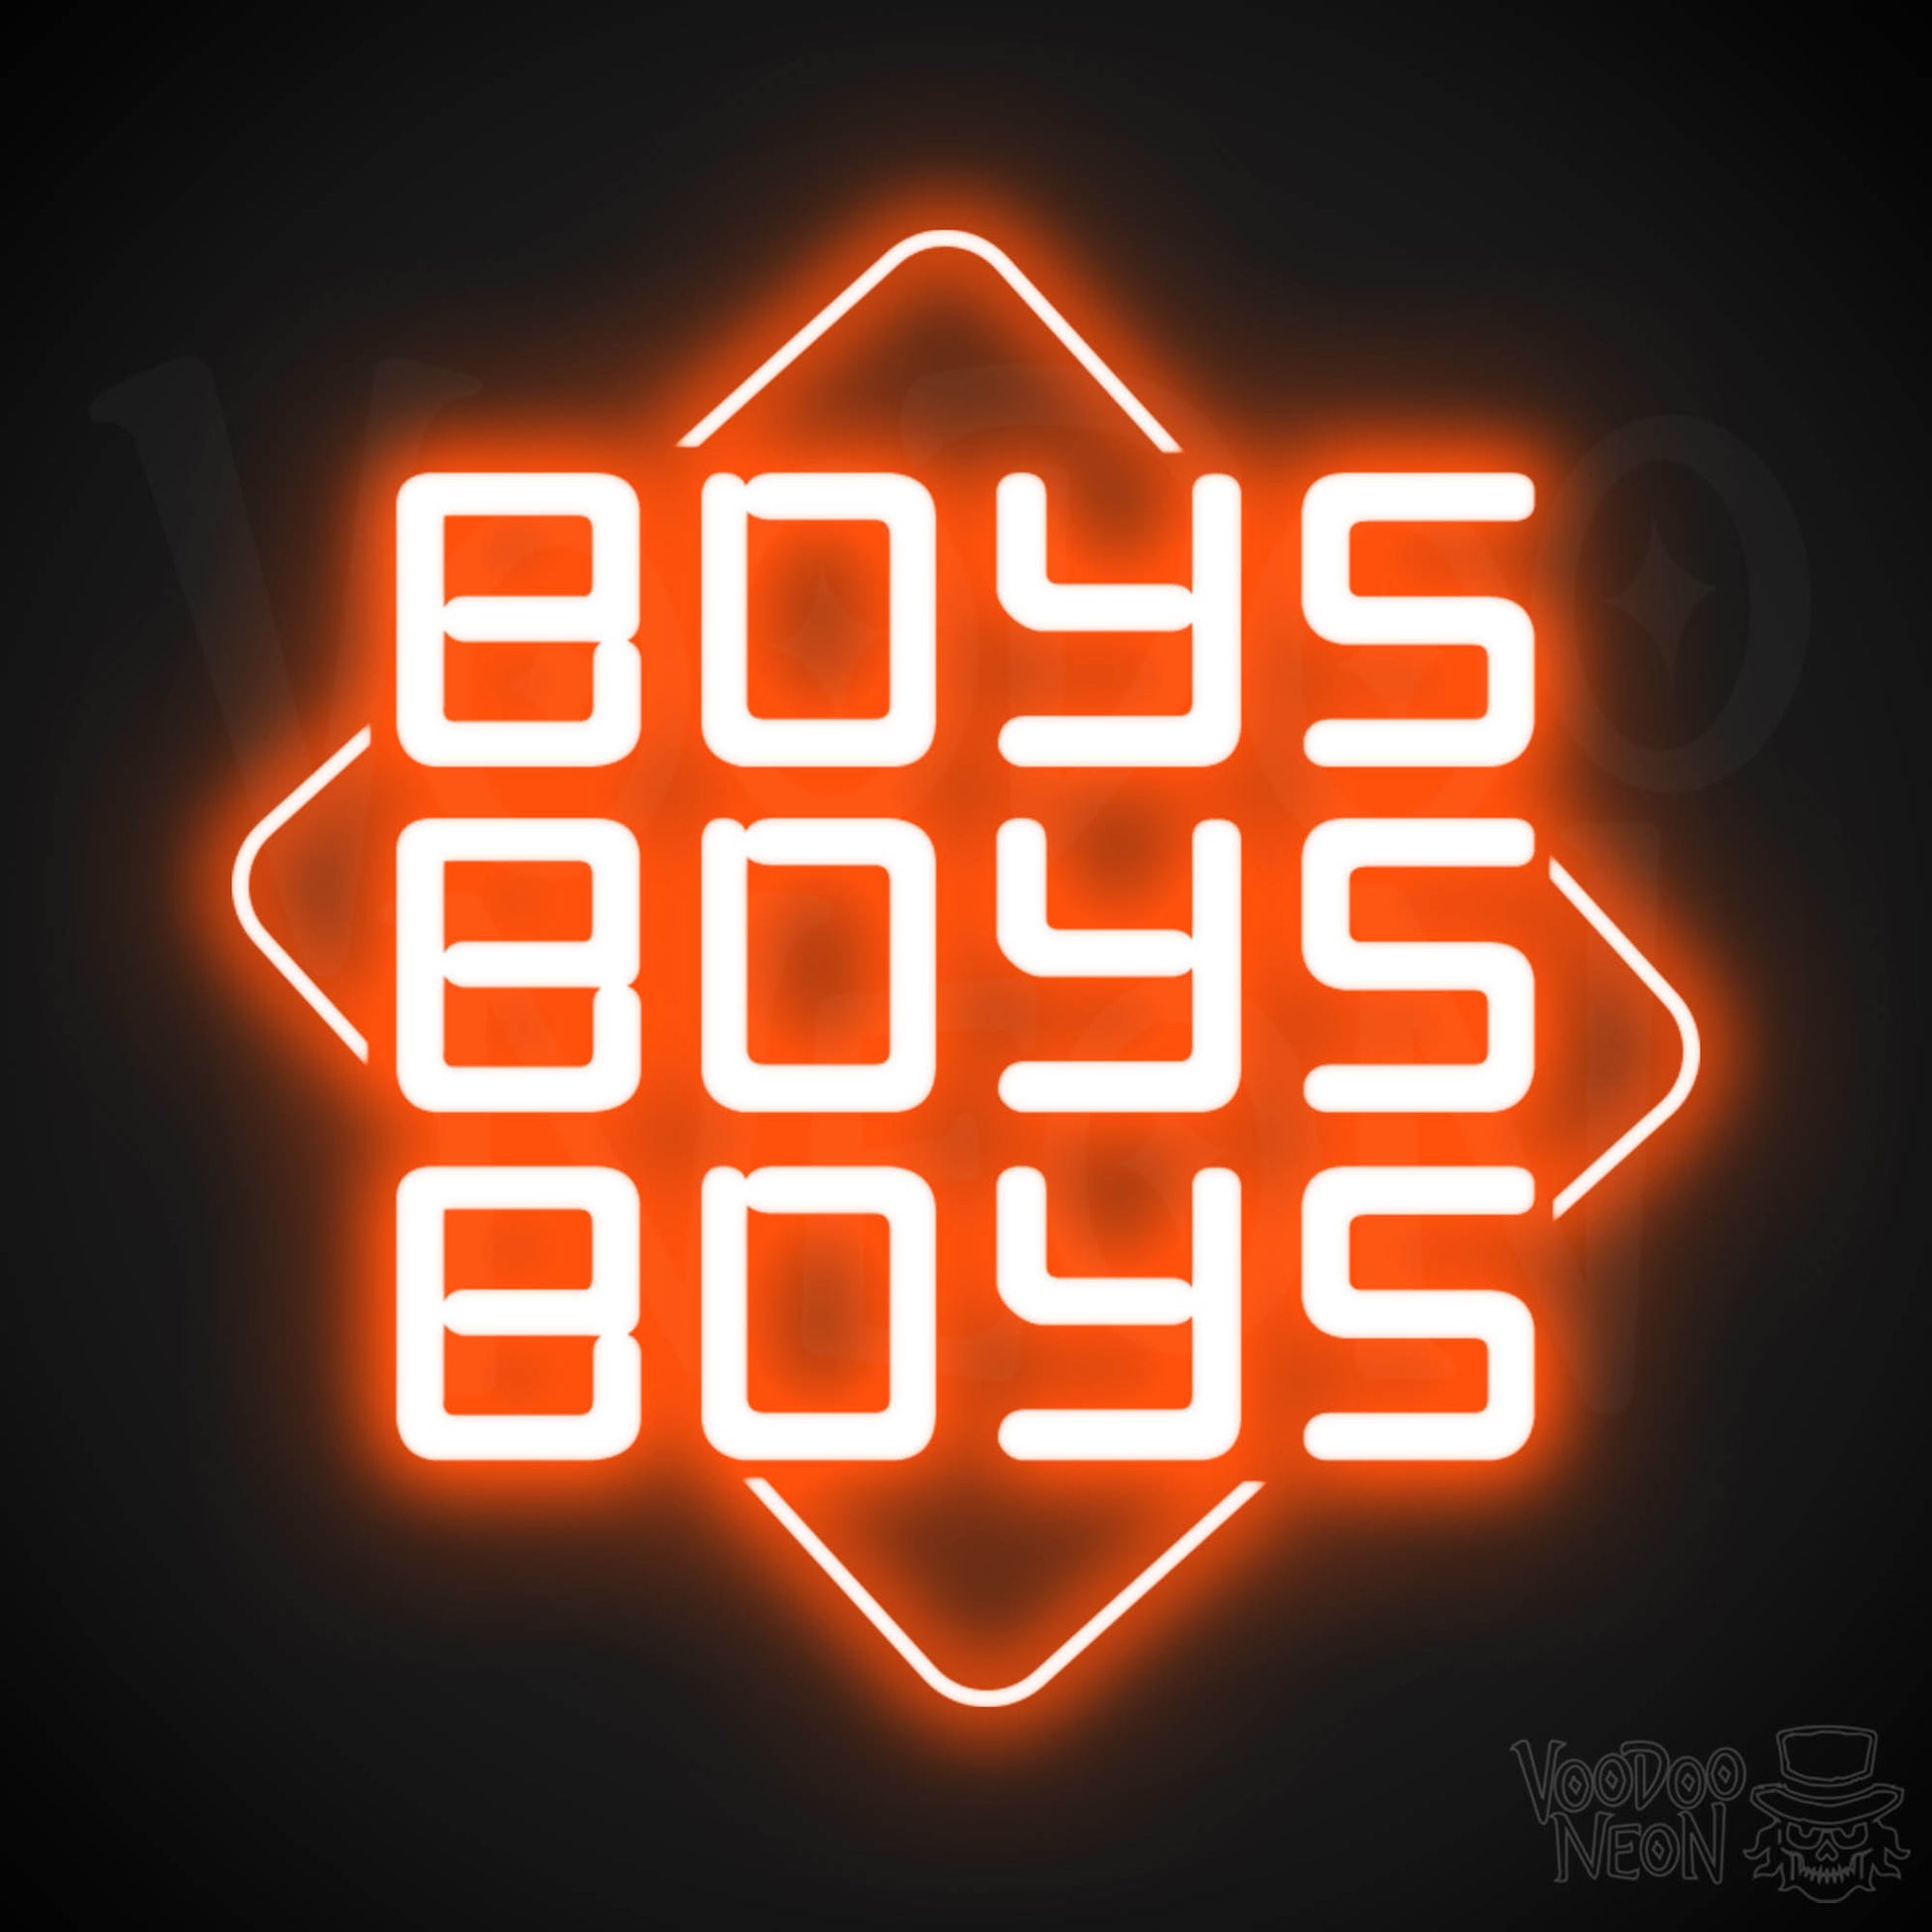 Boys Boys Boys Neon Sign - Neon Boys Boys Boys Sign - Neon Wall Art - Color Orange